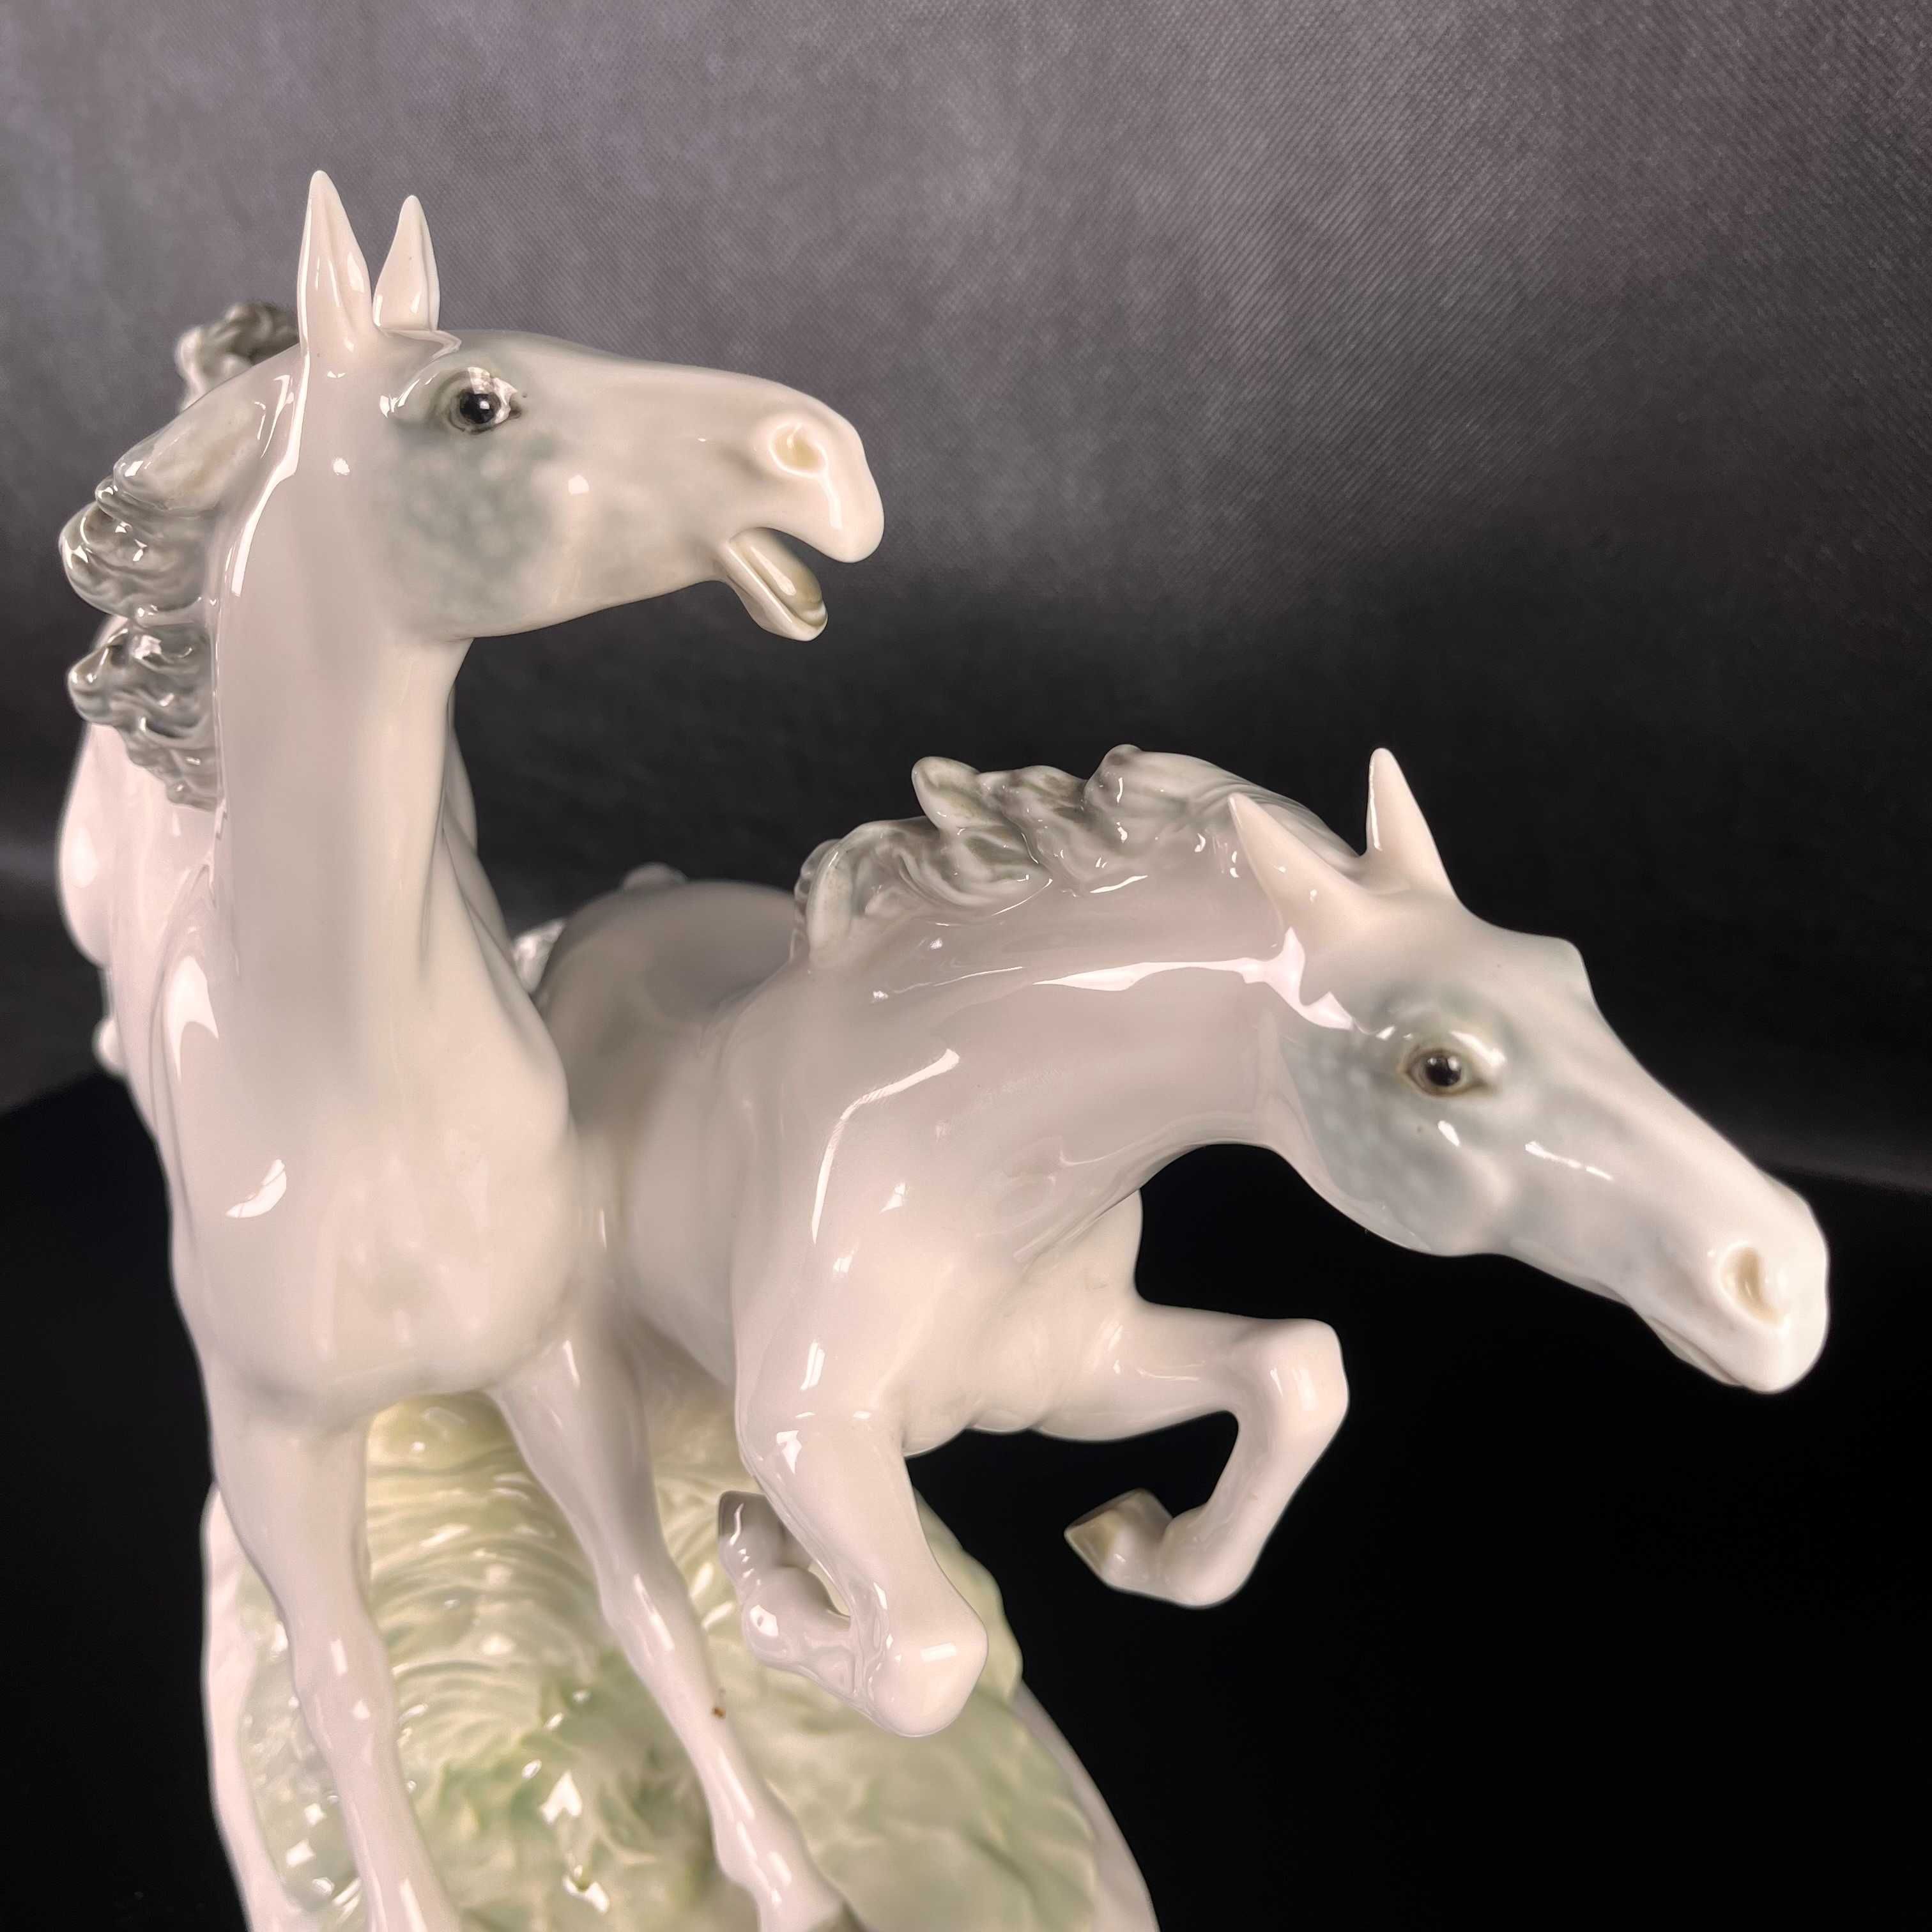 Konie w galopie, duża figura manofaktura Hutschenreuther